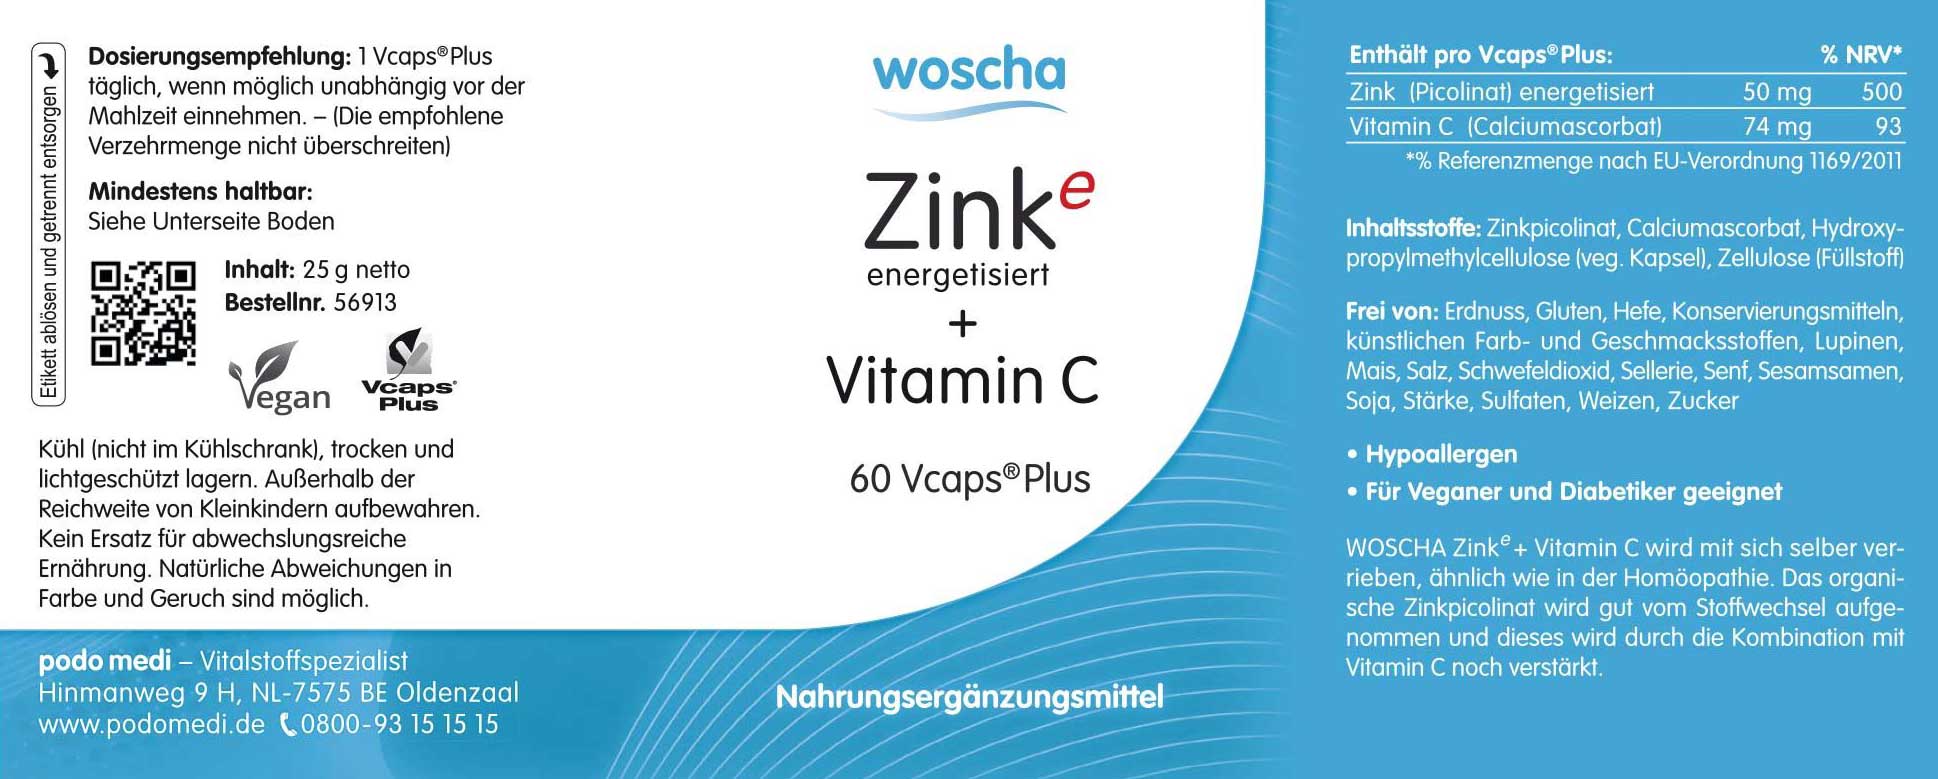 Woscha Zink energetisiert + Vitamin C von podo medi beinhaltet 60 Kapseln Etikett